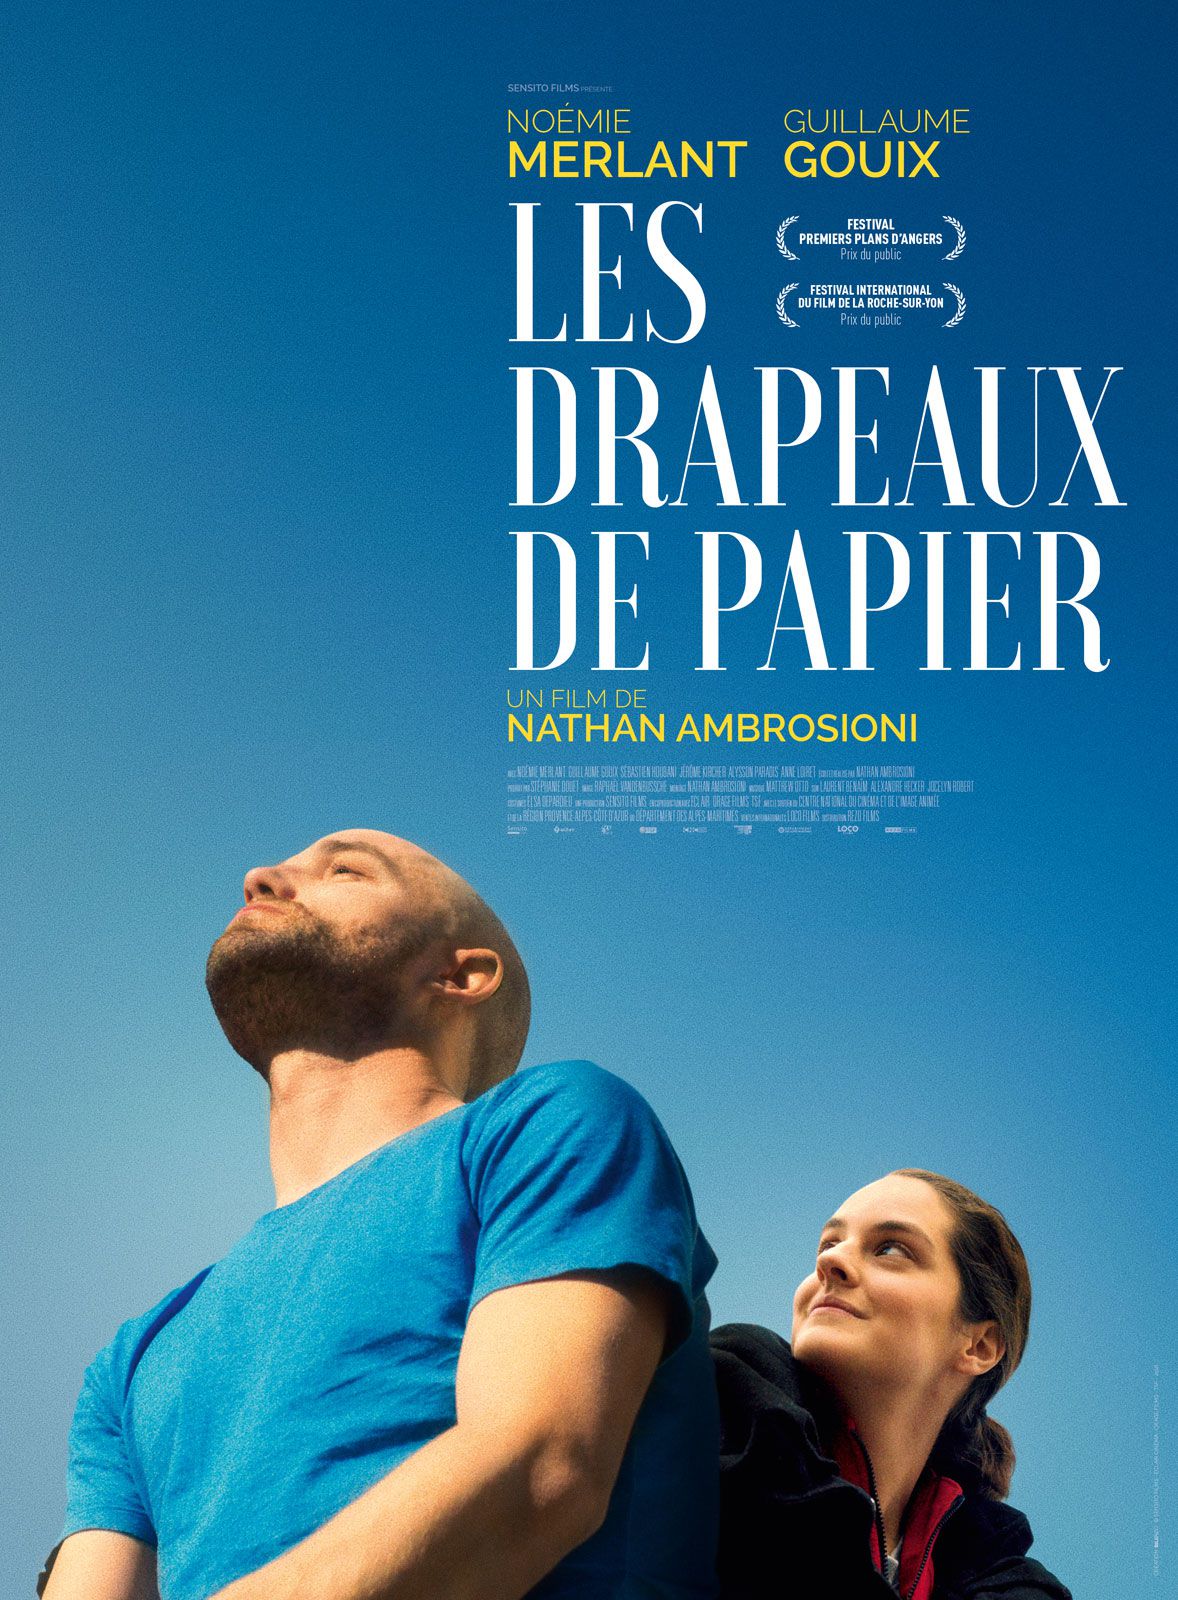 Les Drapeaux de papier - Film (2019) streaming VF gratuit complet